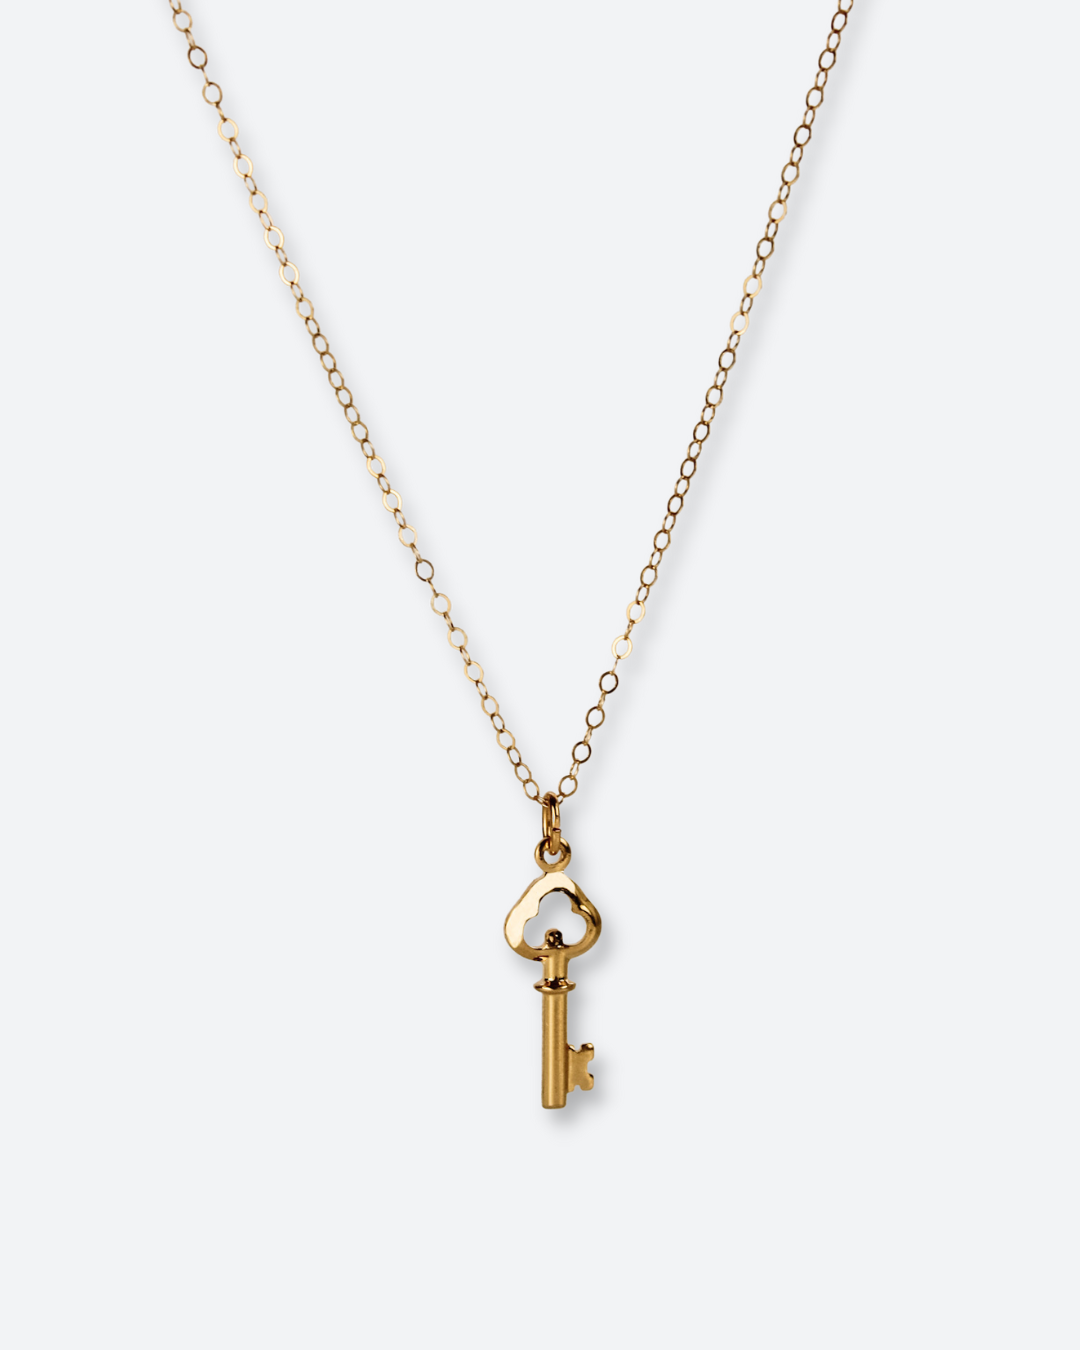 Vintage Key Necklace Jewelry, Necklace Pendant Key Vintage